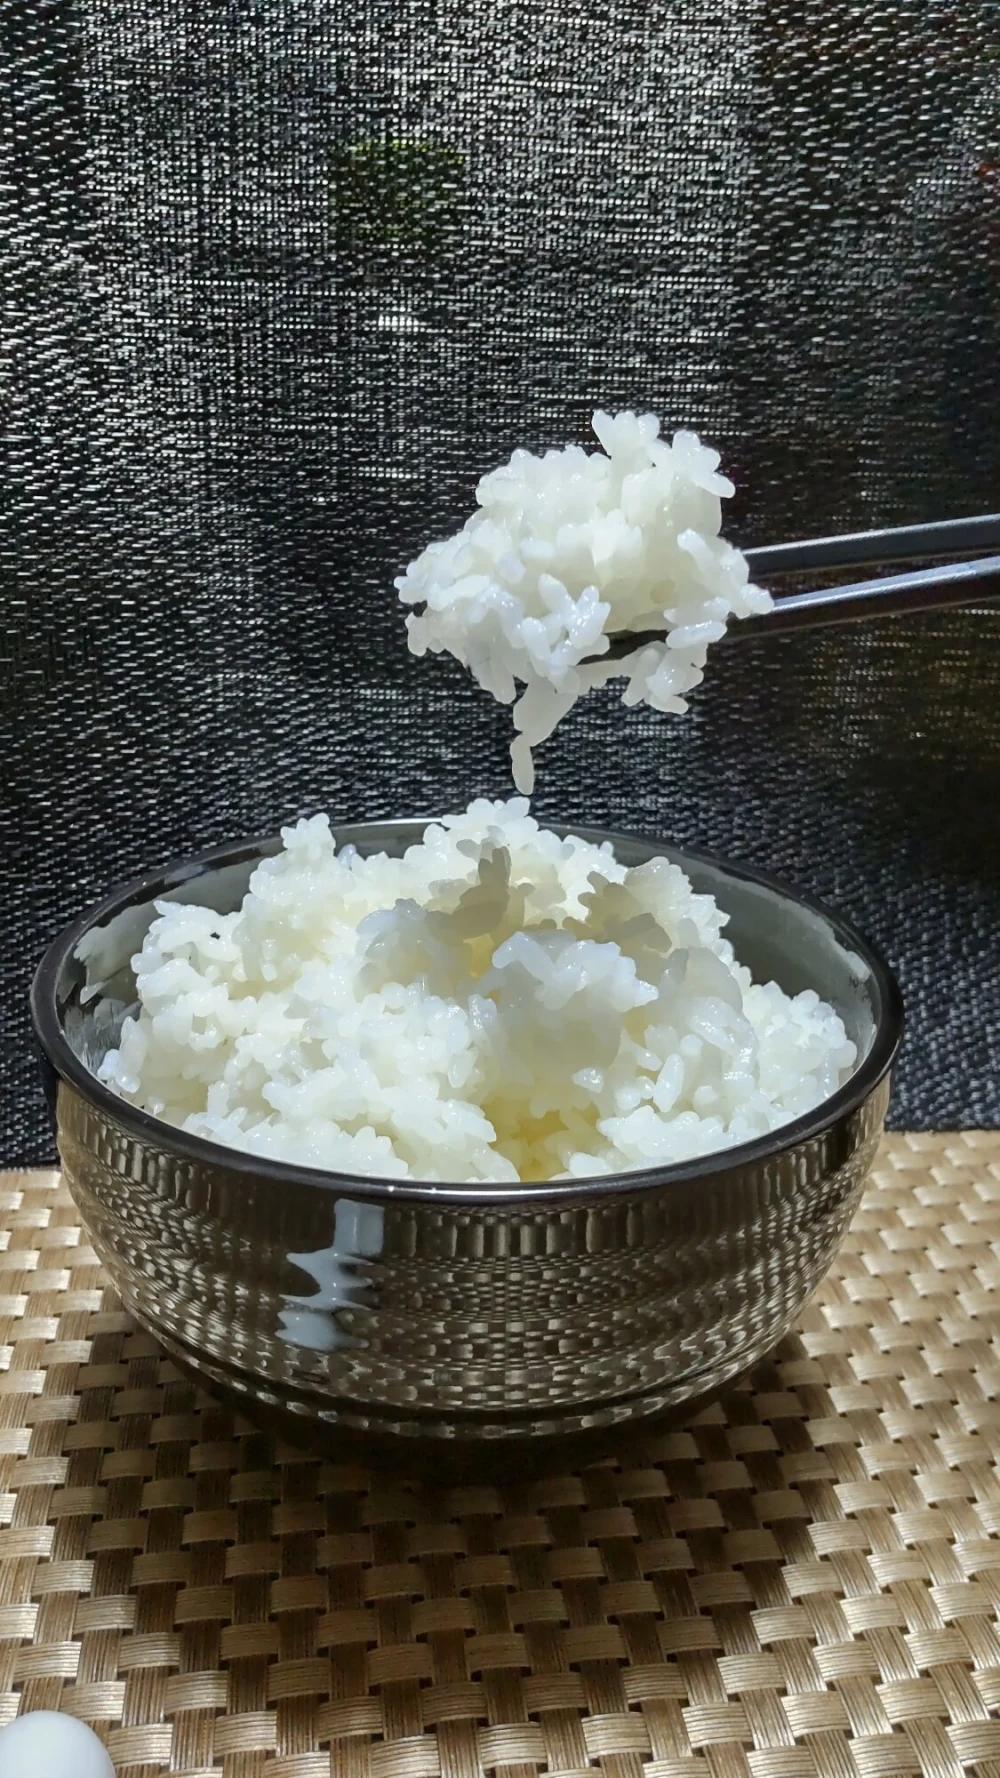 令和4年度 千葉県産 新米 有機栽培米コシヒカリ 精米5㎏×2袋より